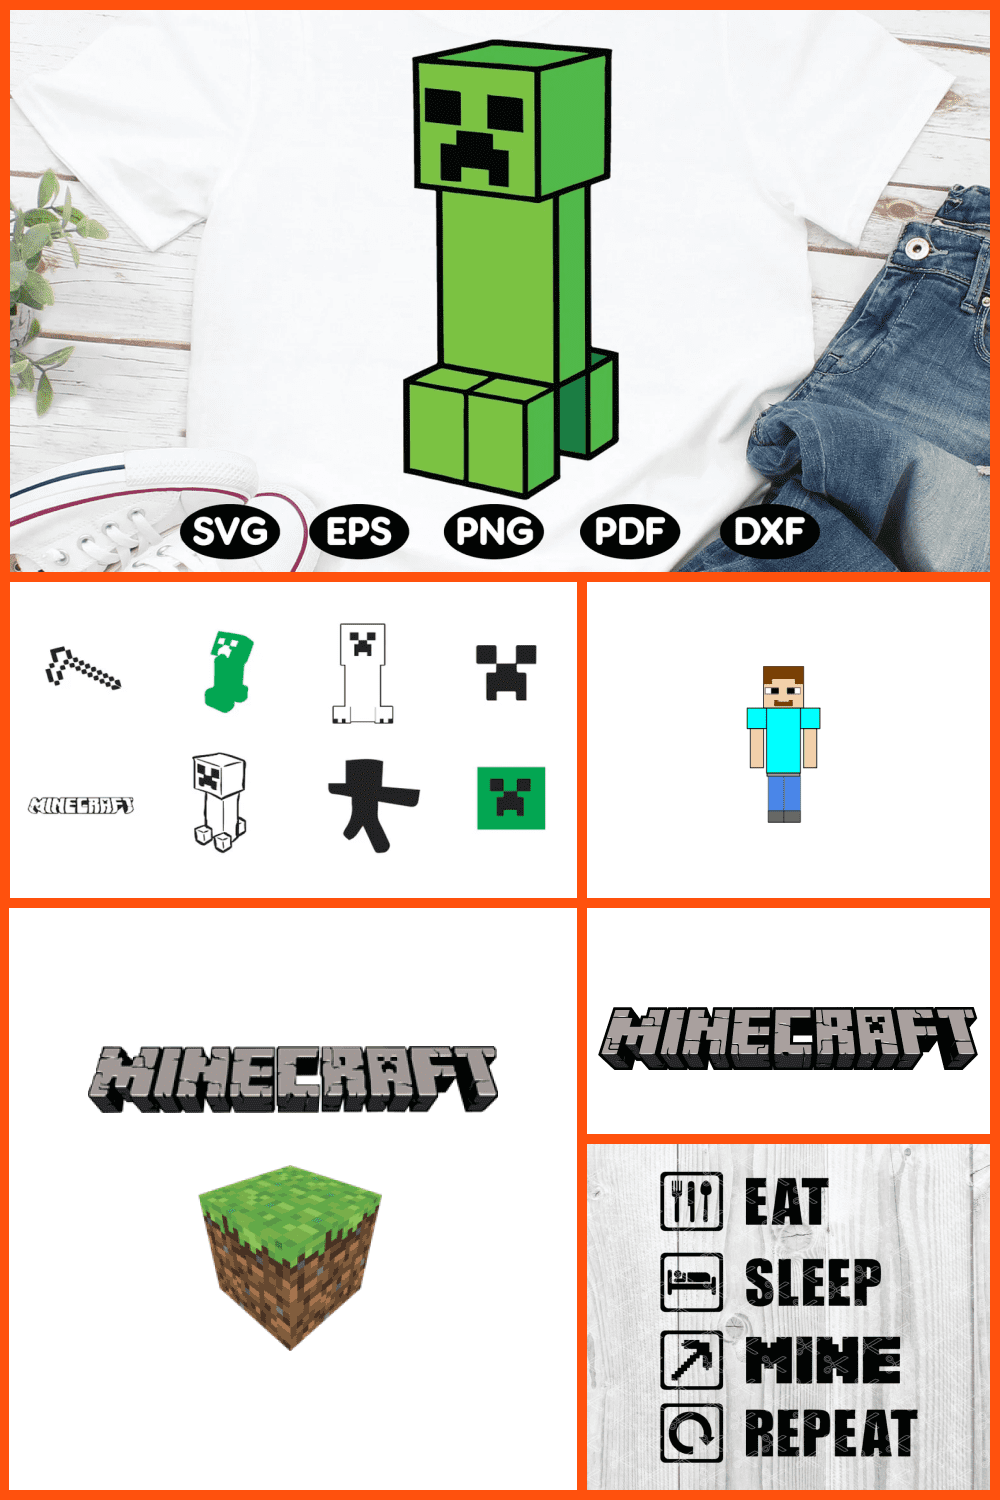 Best Minecraft SVG Images pinterest.